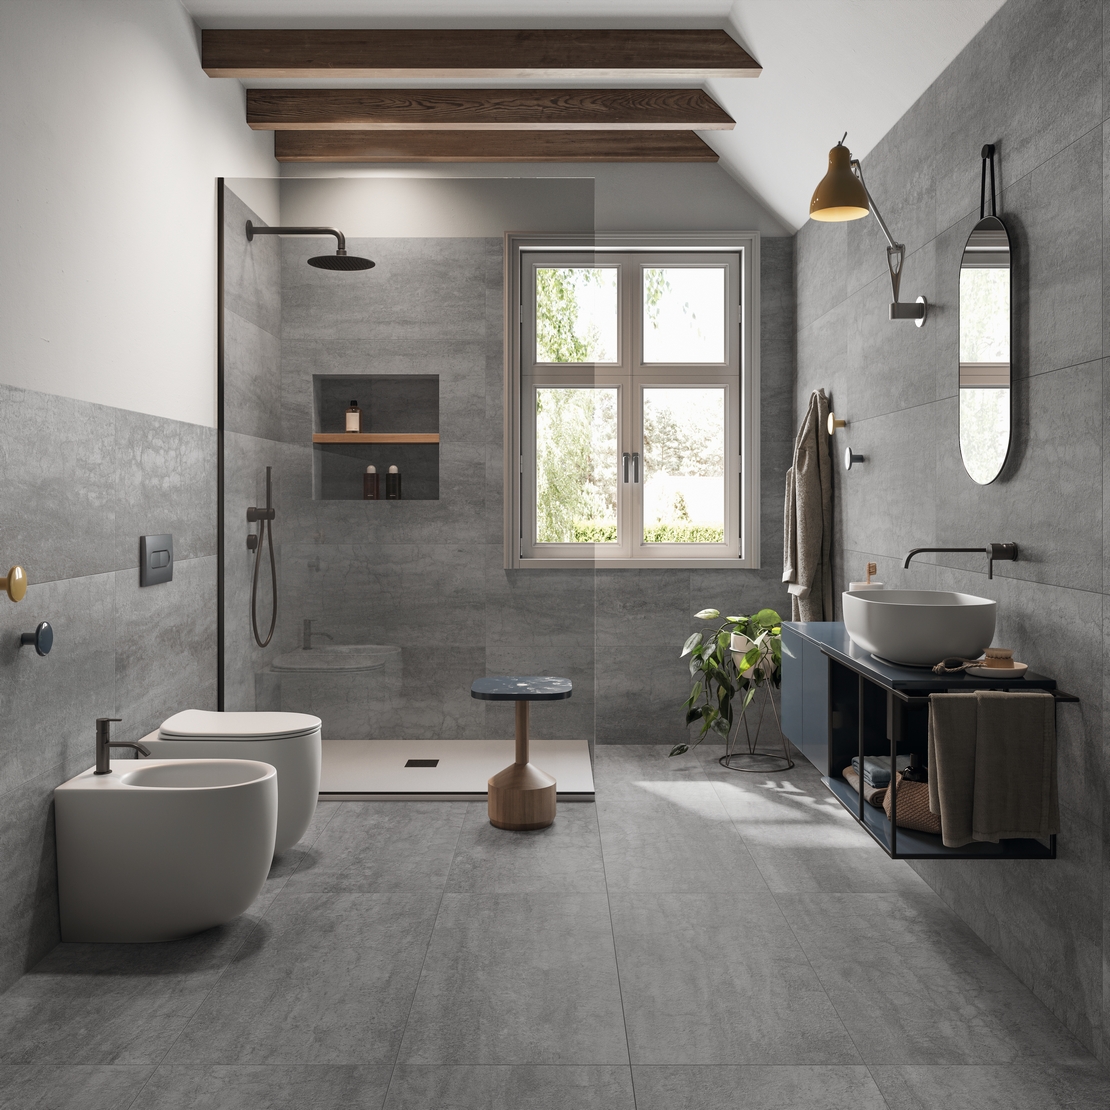 Salle de bains minimaliste avec douche. Moderne, effet pierre grise au style industriel. - Inspirations Iperceramica